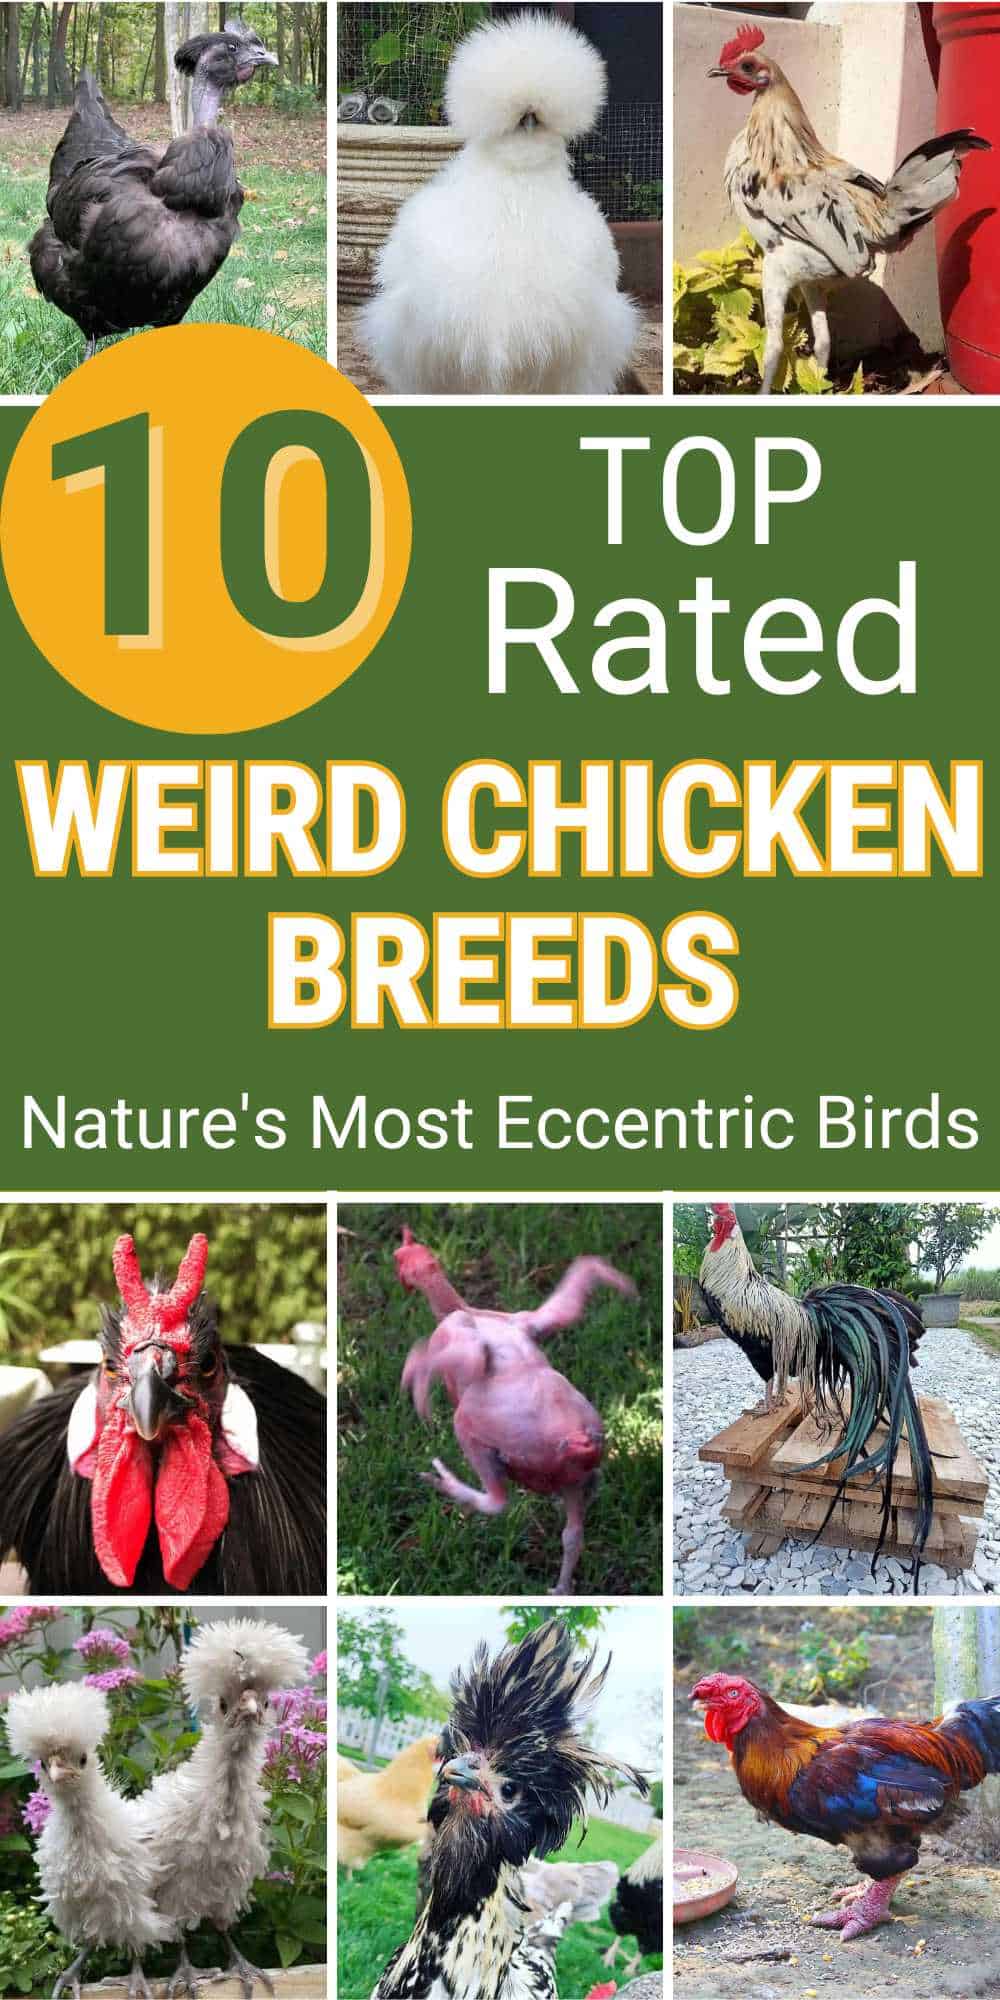 Nature's Most Eccentric Birds